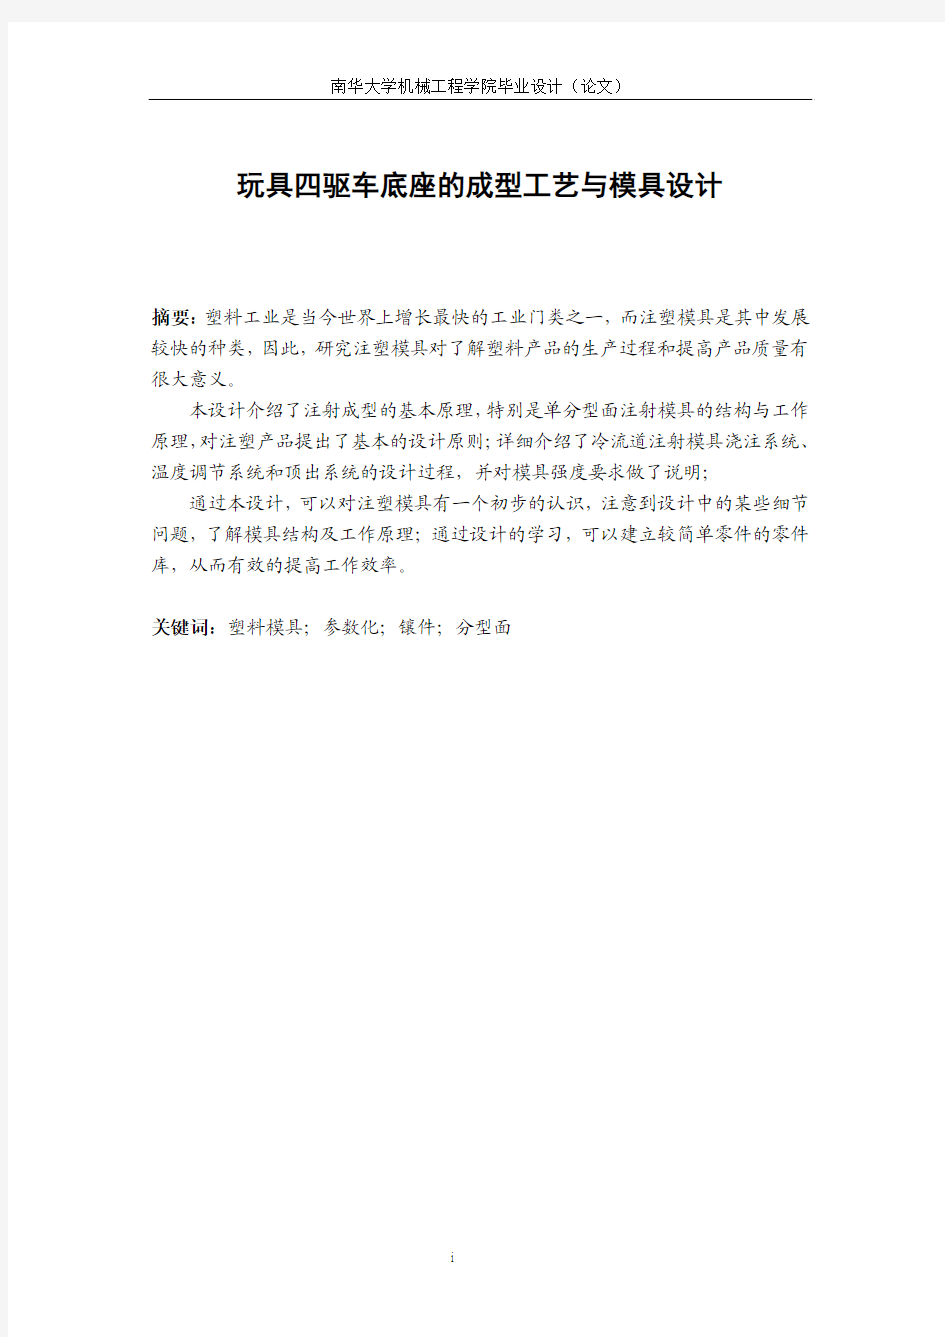 中文摘要和关键词页